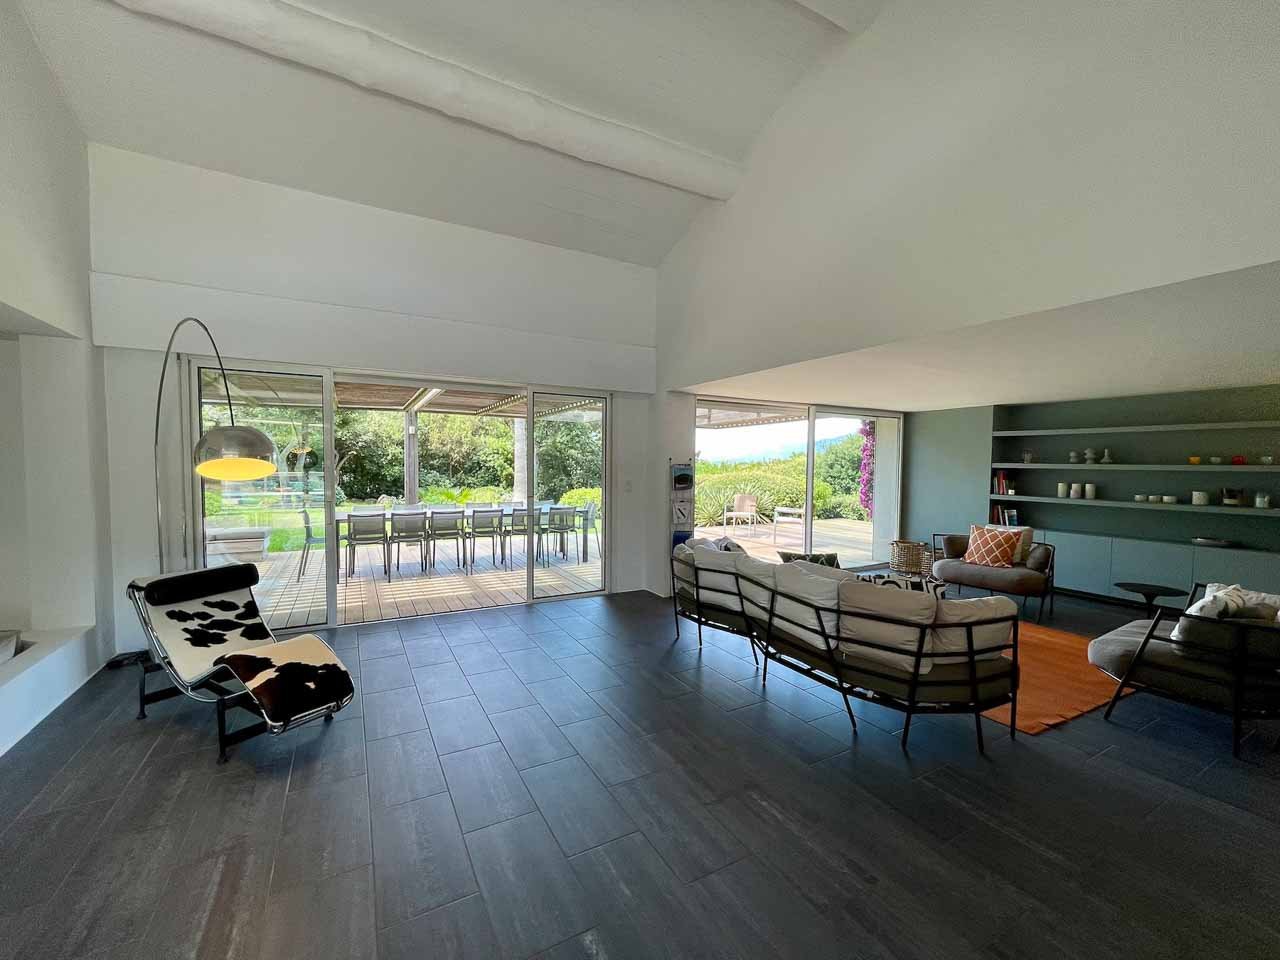 Salon et séjour location villa en location à Cala Rossa Porto Vecchio